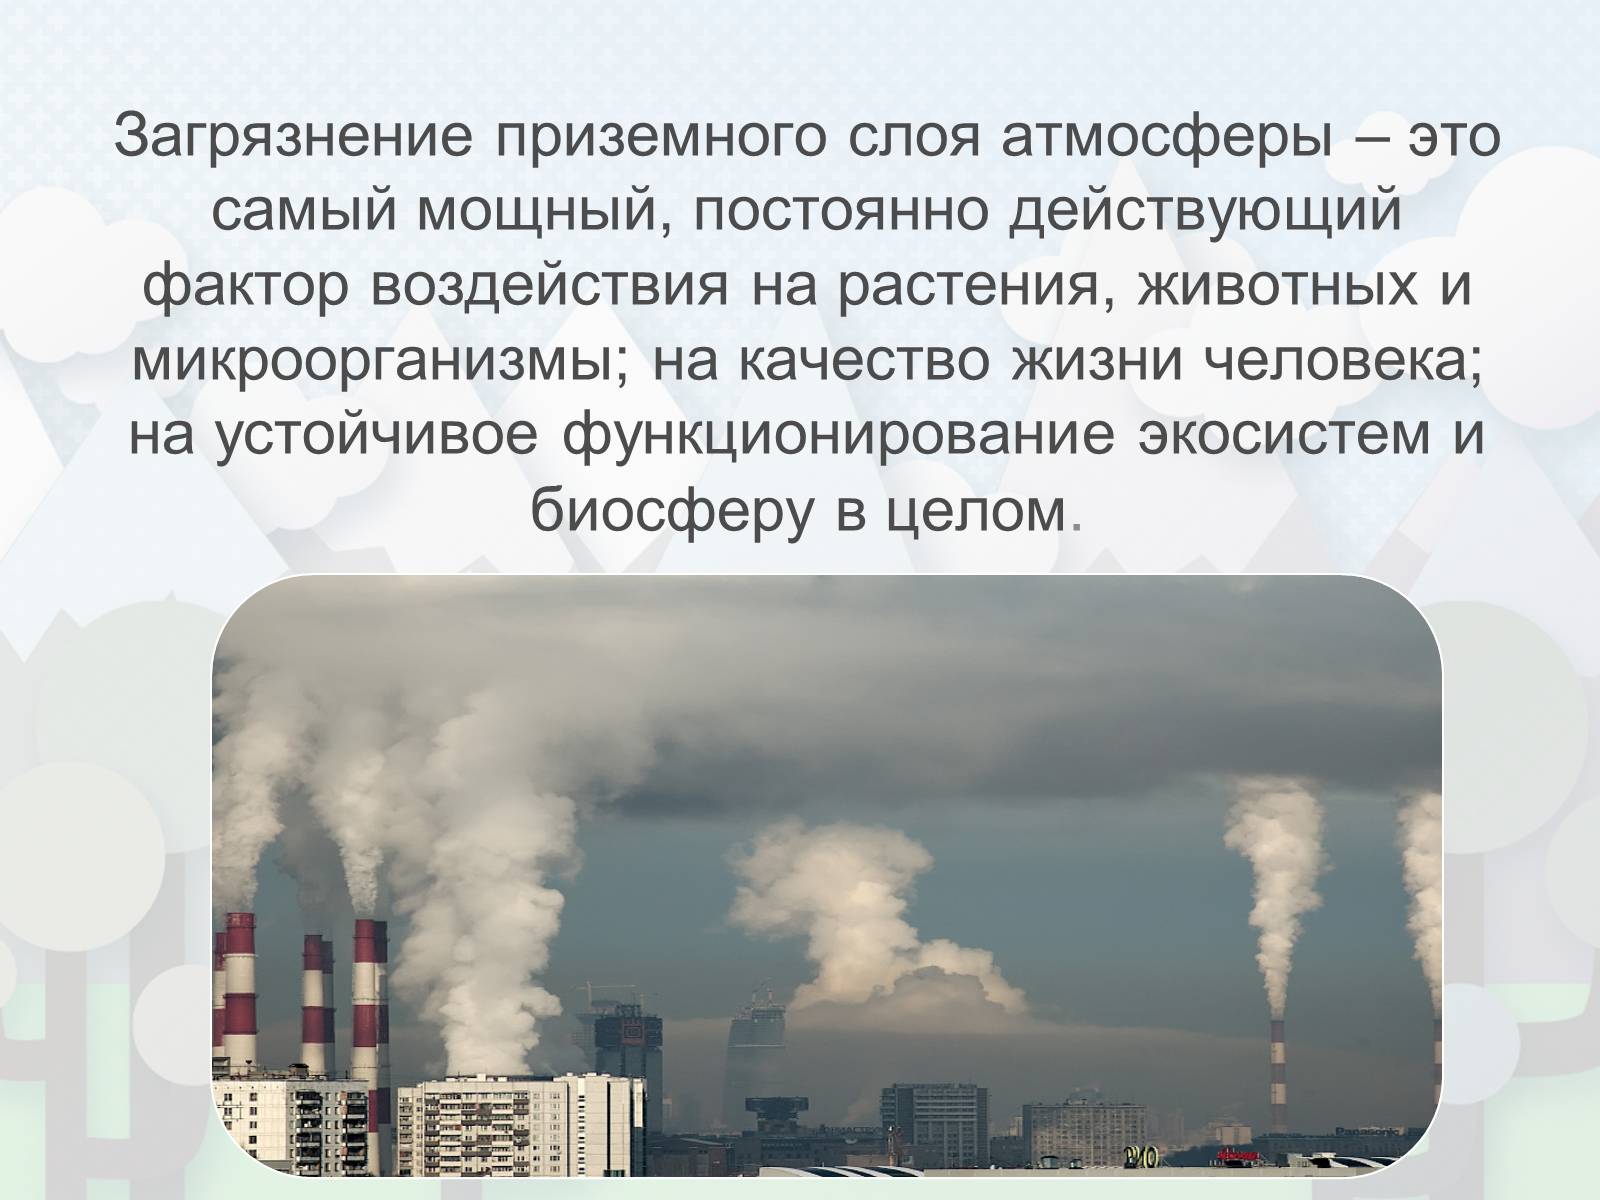 Загрязнение атмосферного слоя